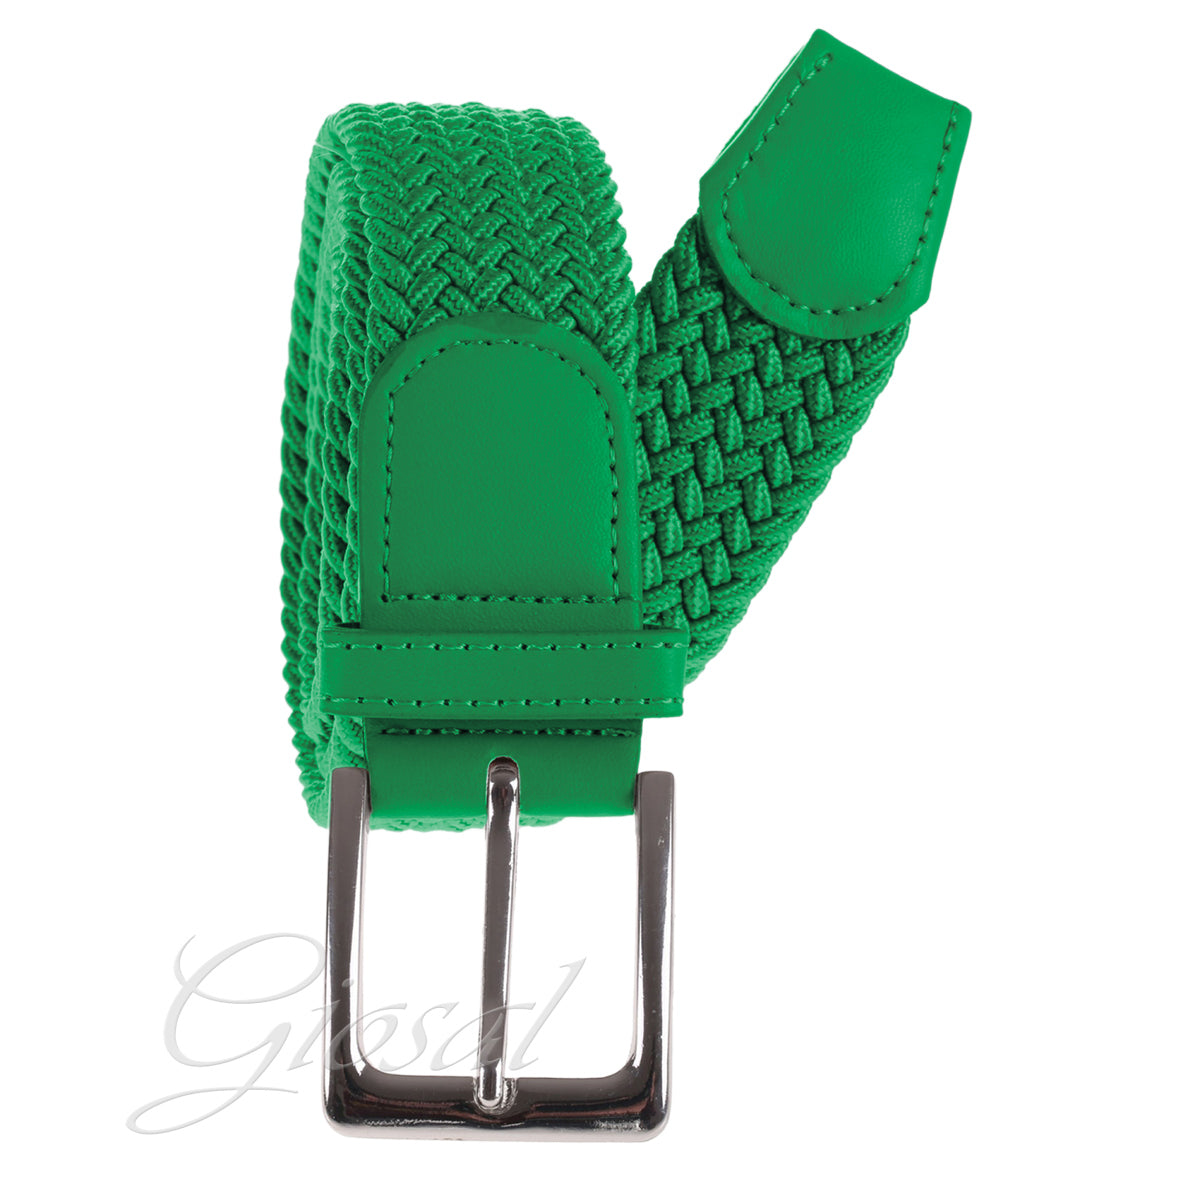 Cintura Cinta Uomo Elastica Regolabile Fibbia In Metallo Tinta Unita Verde Chiaro GIOSAL-A2028A